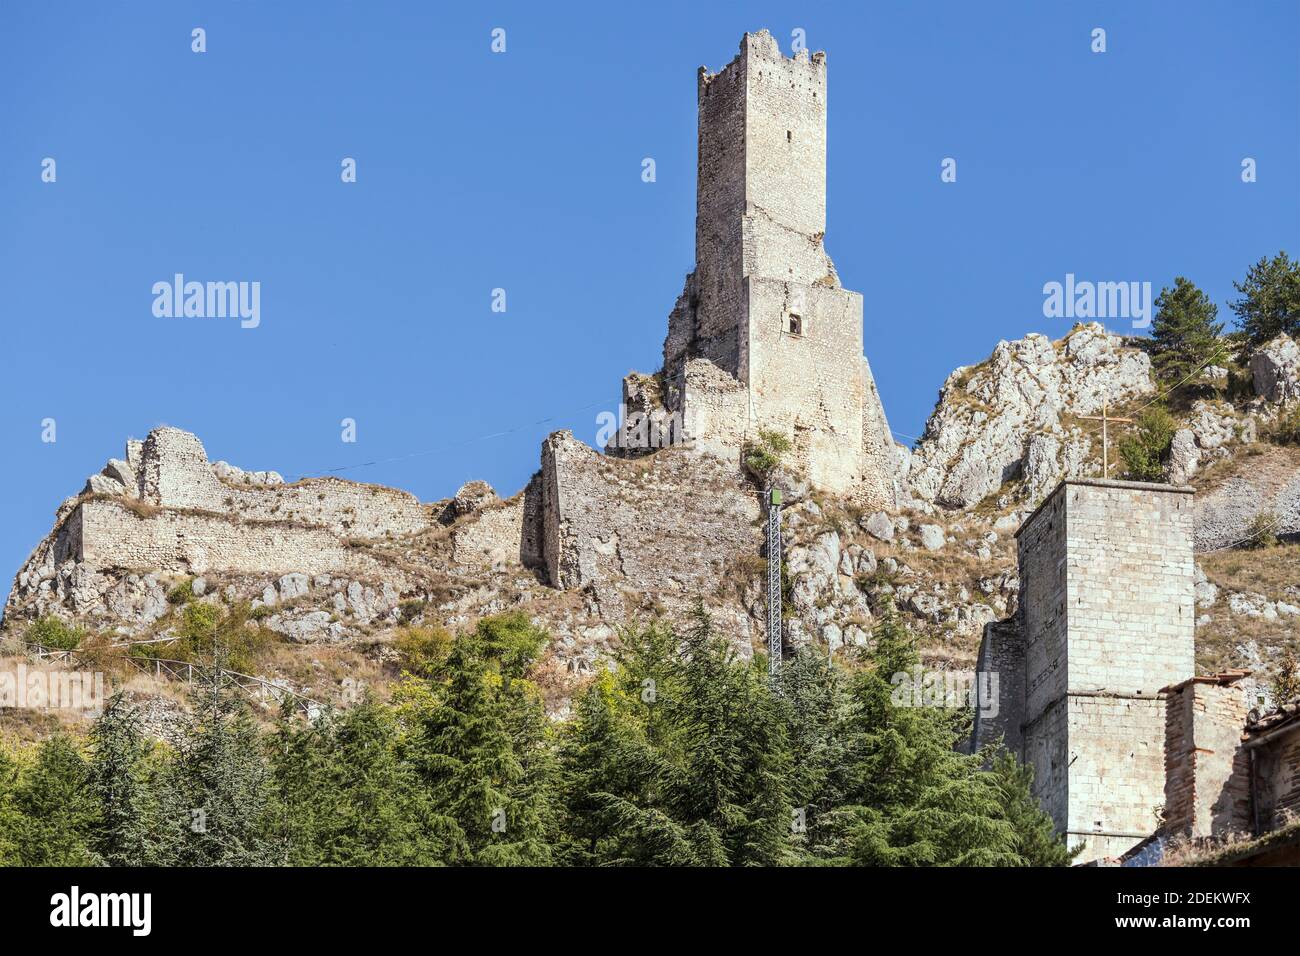 Paesaggio urbano con la torre Piccolomini e le rovine del castello nel villaggio storico, girato in luce brillante a Pescina, l'Aquila, Abruzzo, Italia Foto Stock